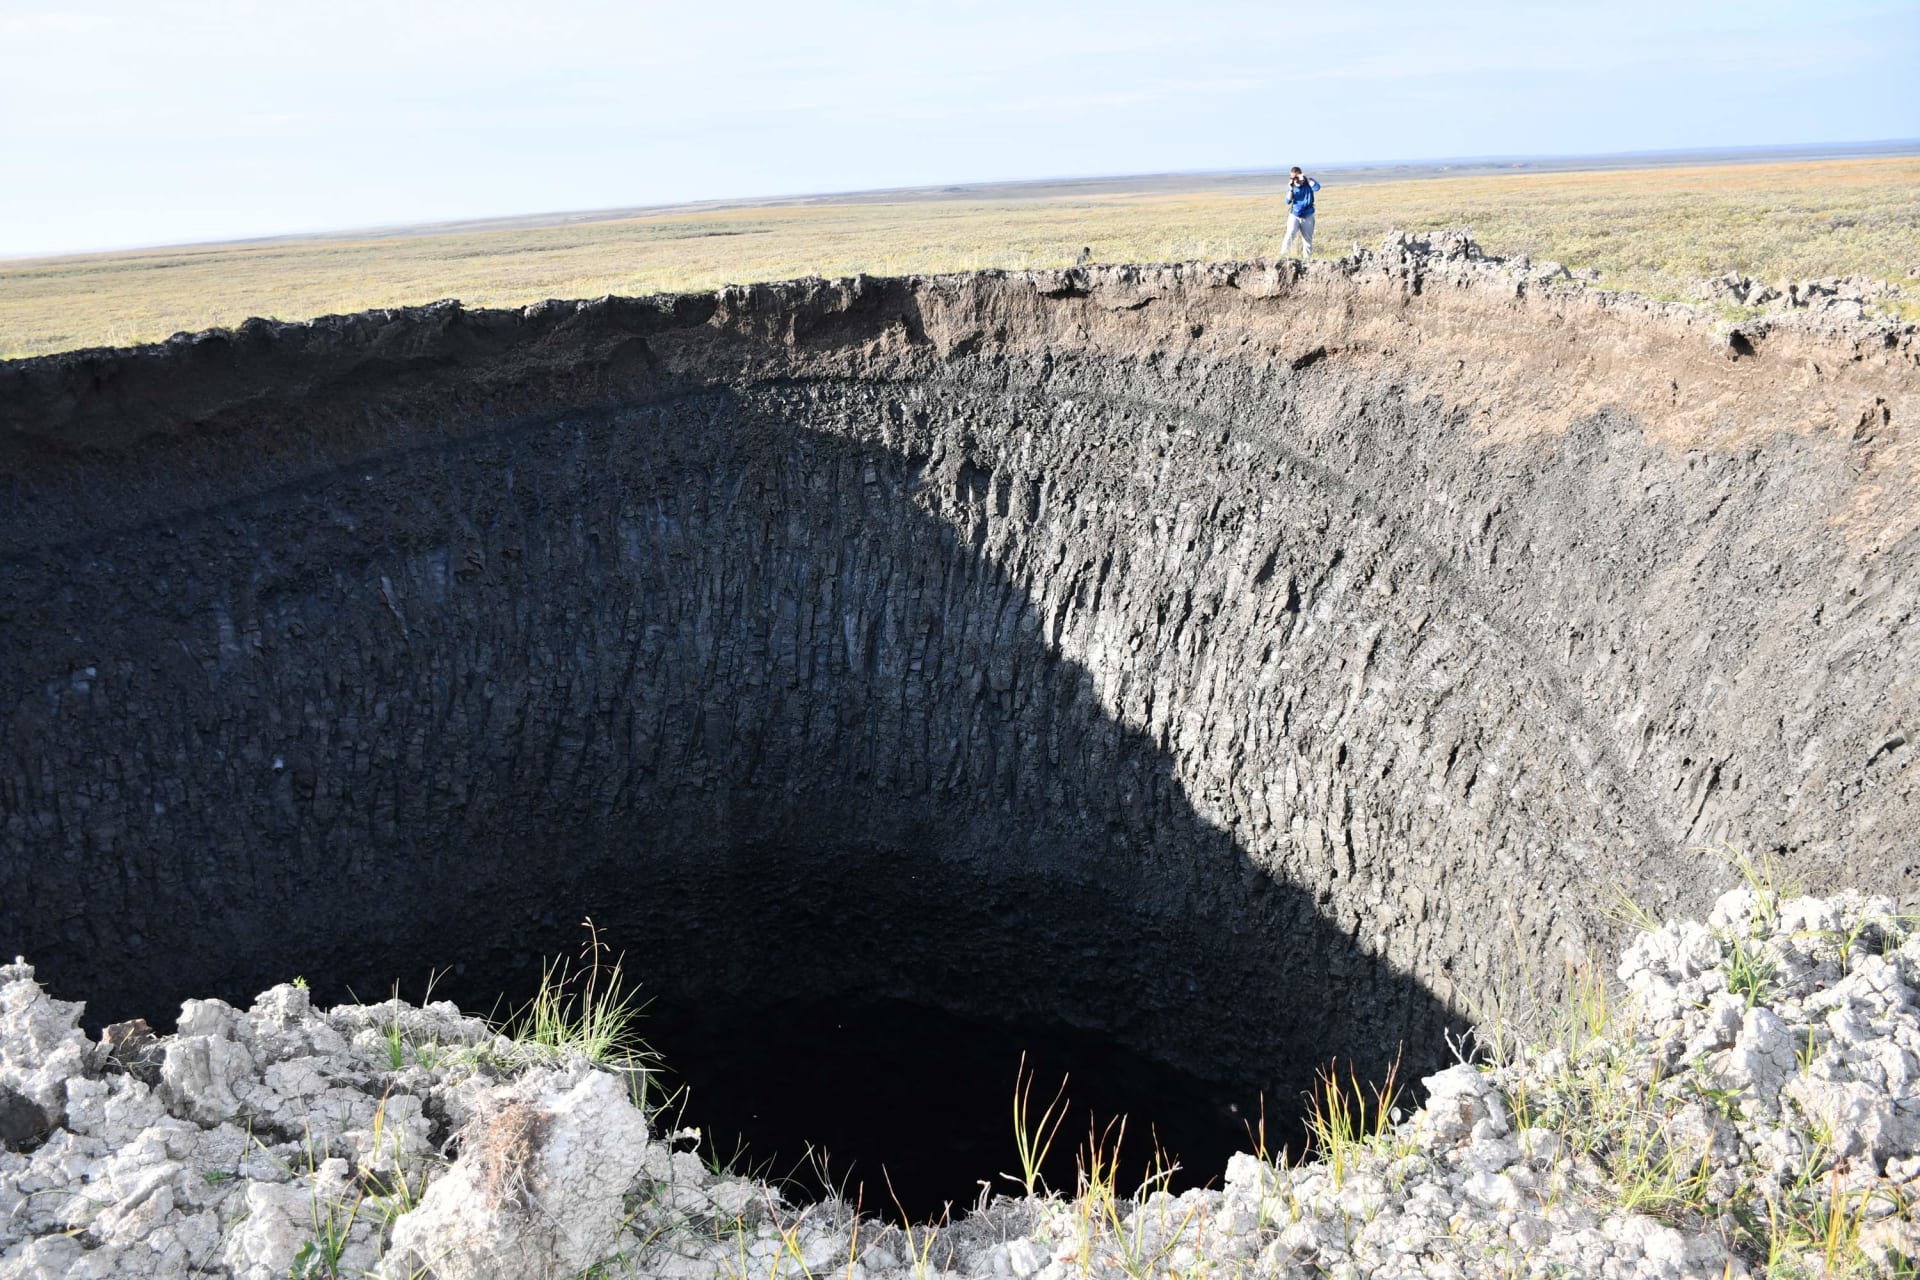 بدأت بالظهور منذ 2013.. علماء يفكون الألغاز وراء الحفر الهائلة التي ظهرت في أراضي سيبيريا 